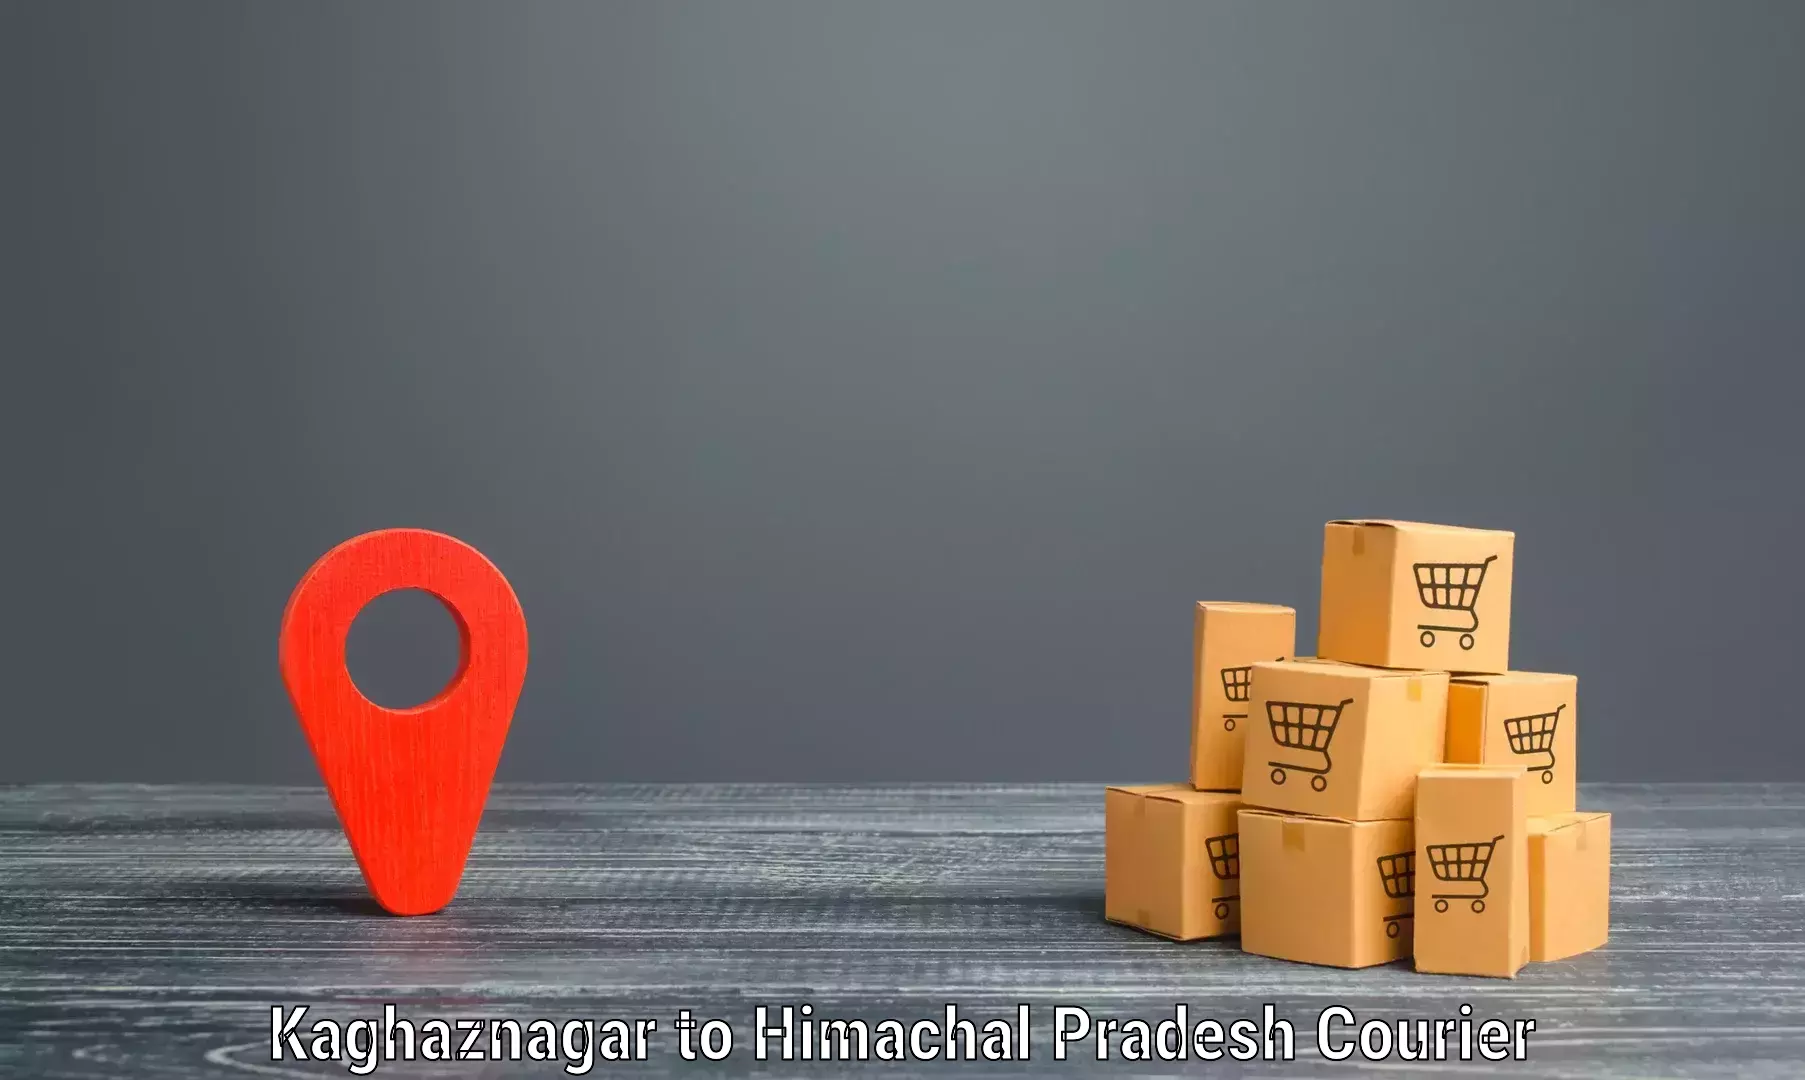 Cost-effective courier options Kaghaznagar to Kachhera